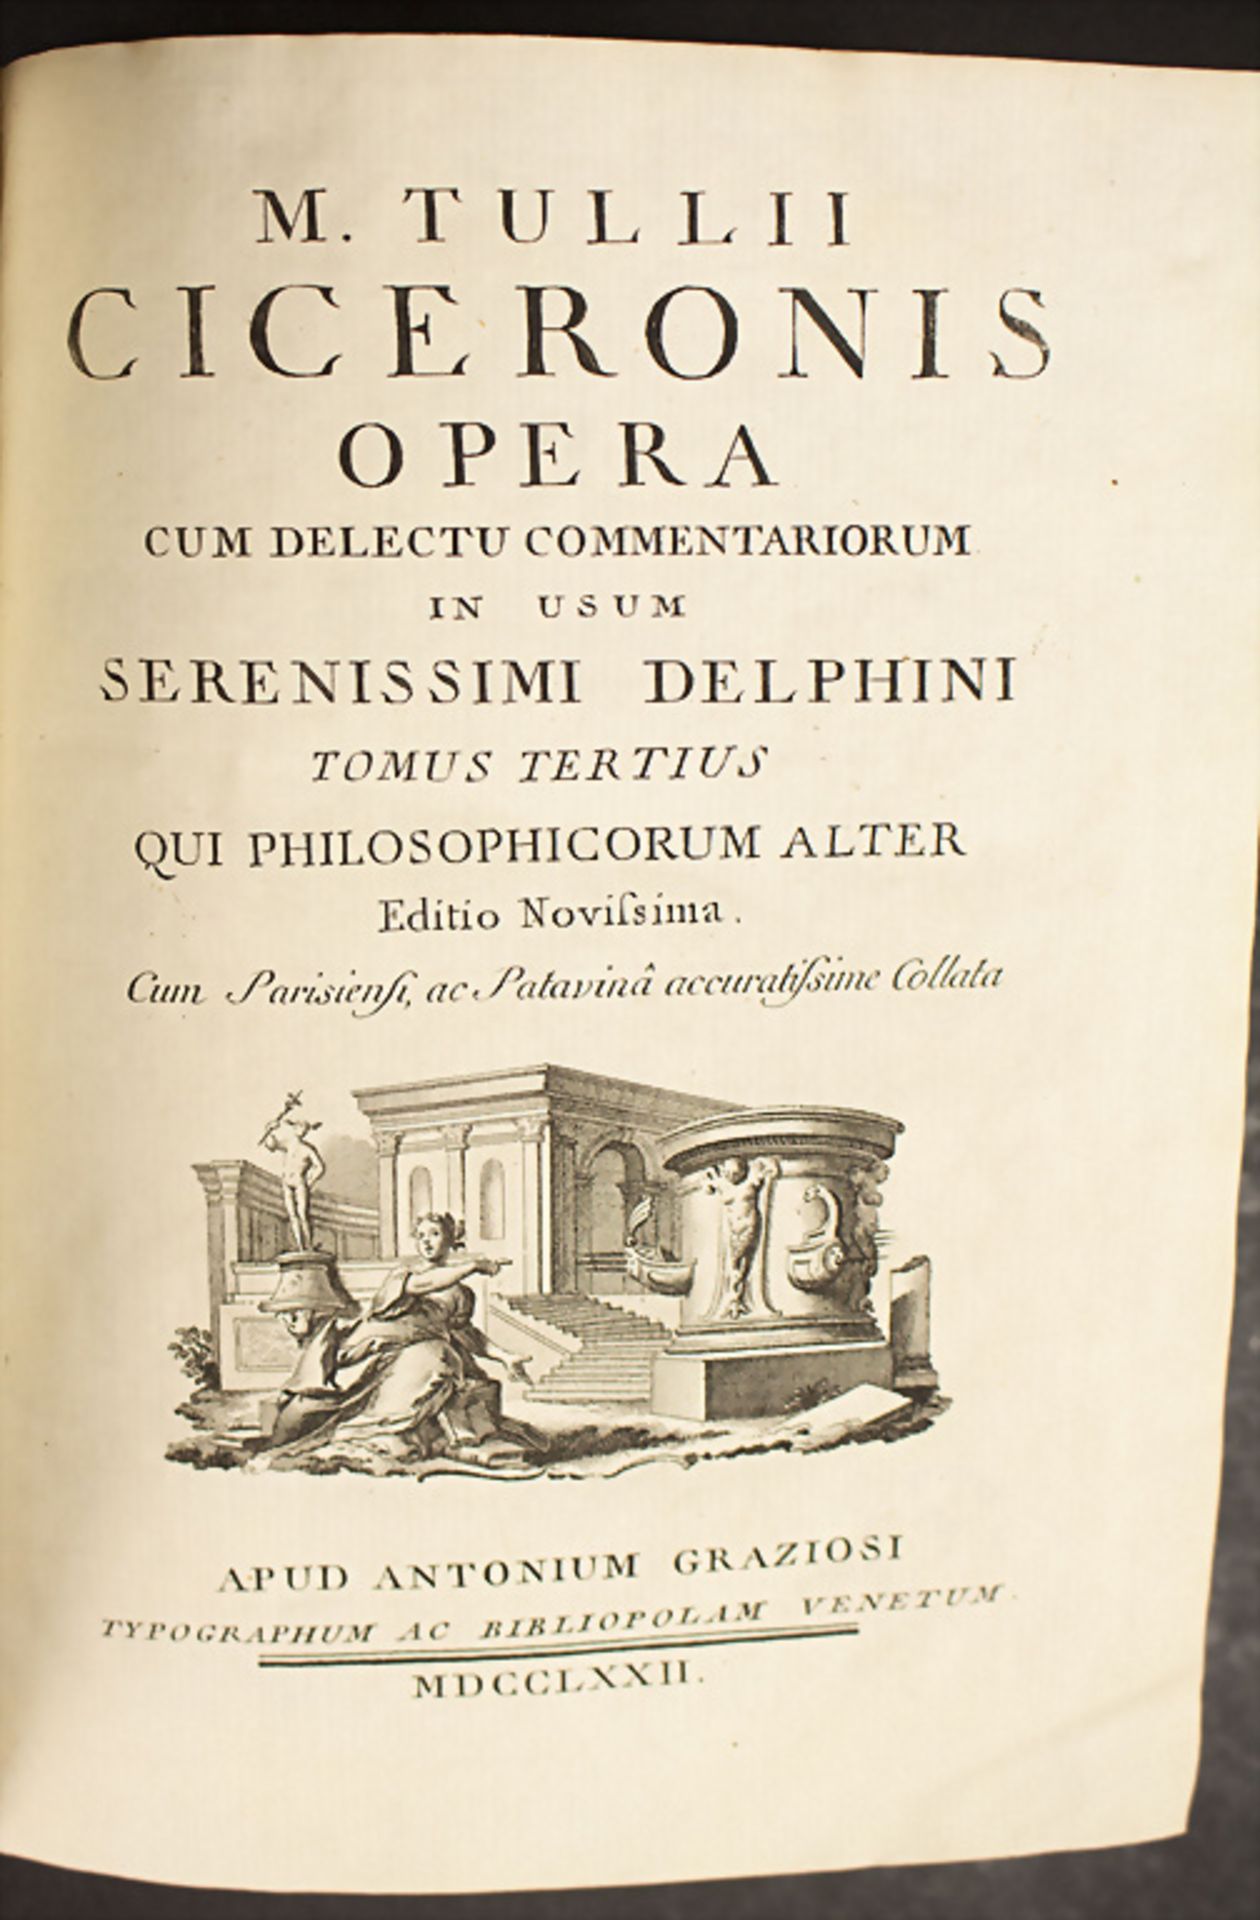 M. Tullii Ciceronis: 'Opera, cum delectu commemtariorum in usum serenissimi delphini', 1772